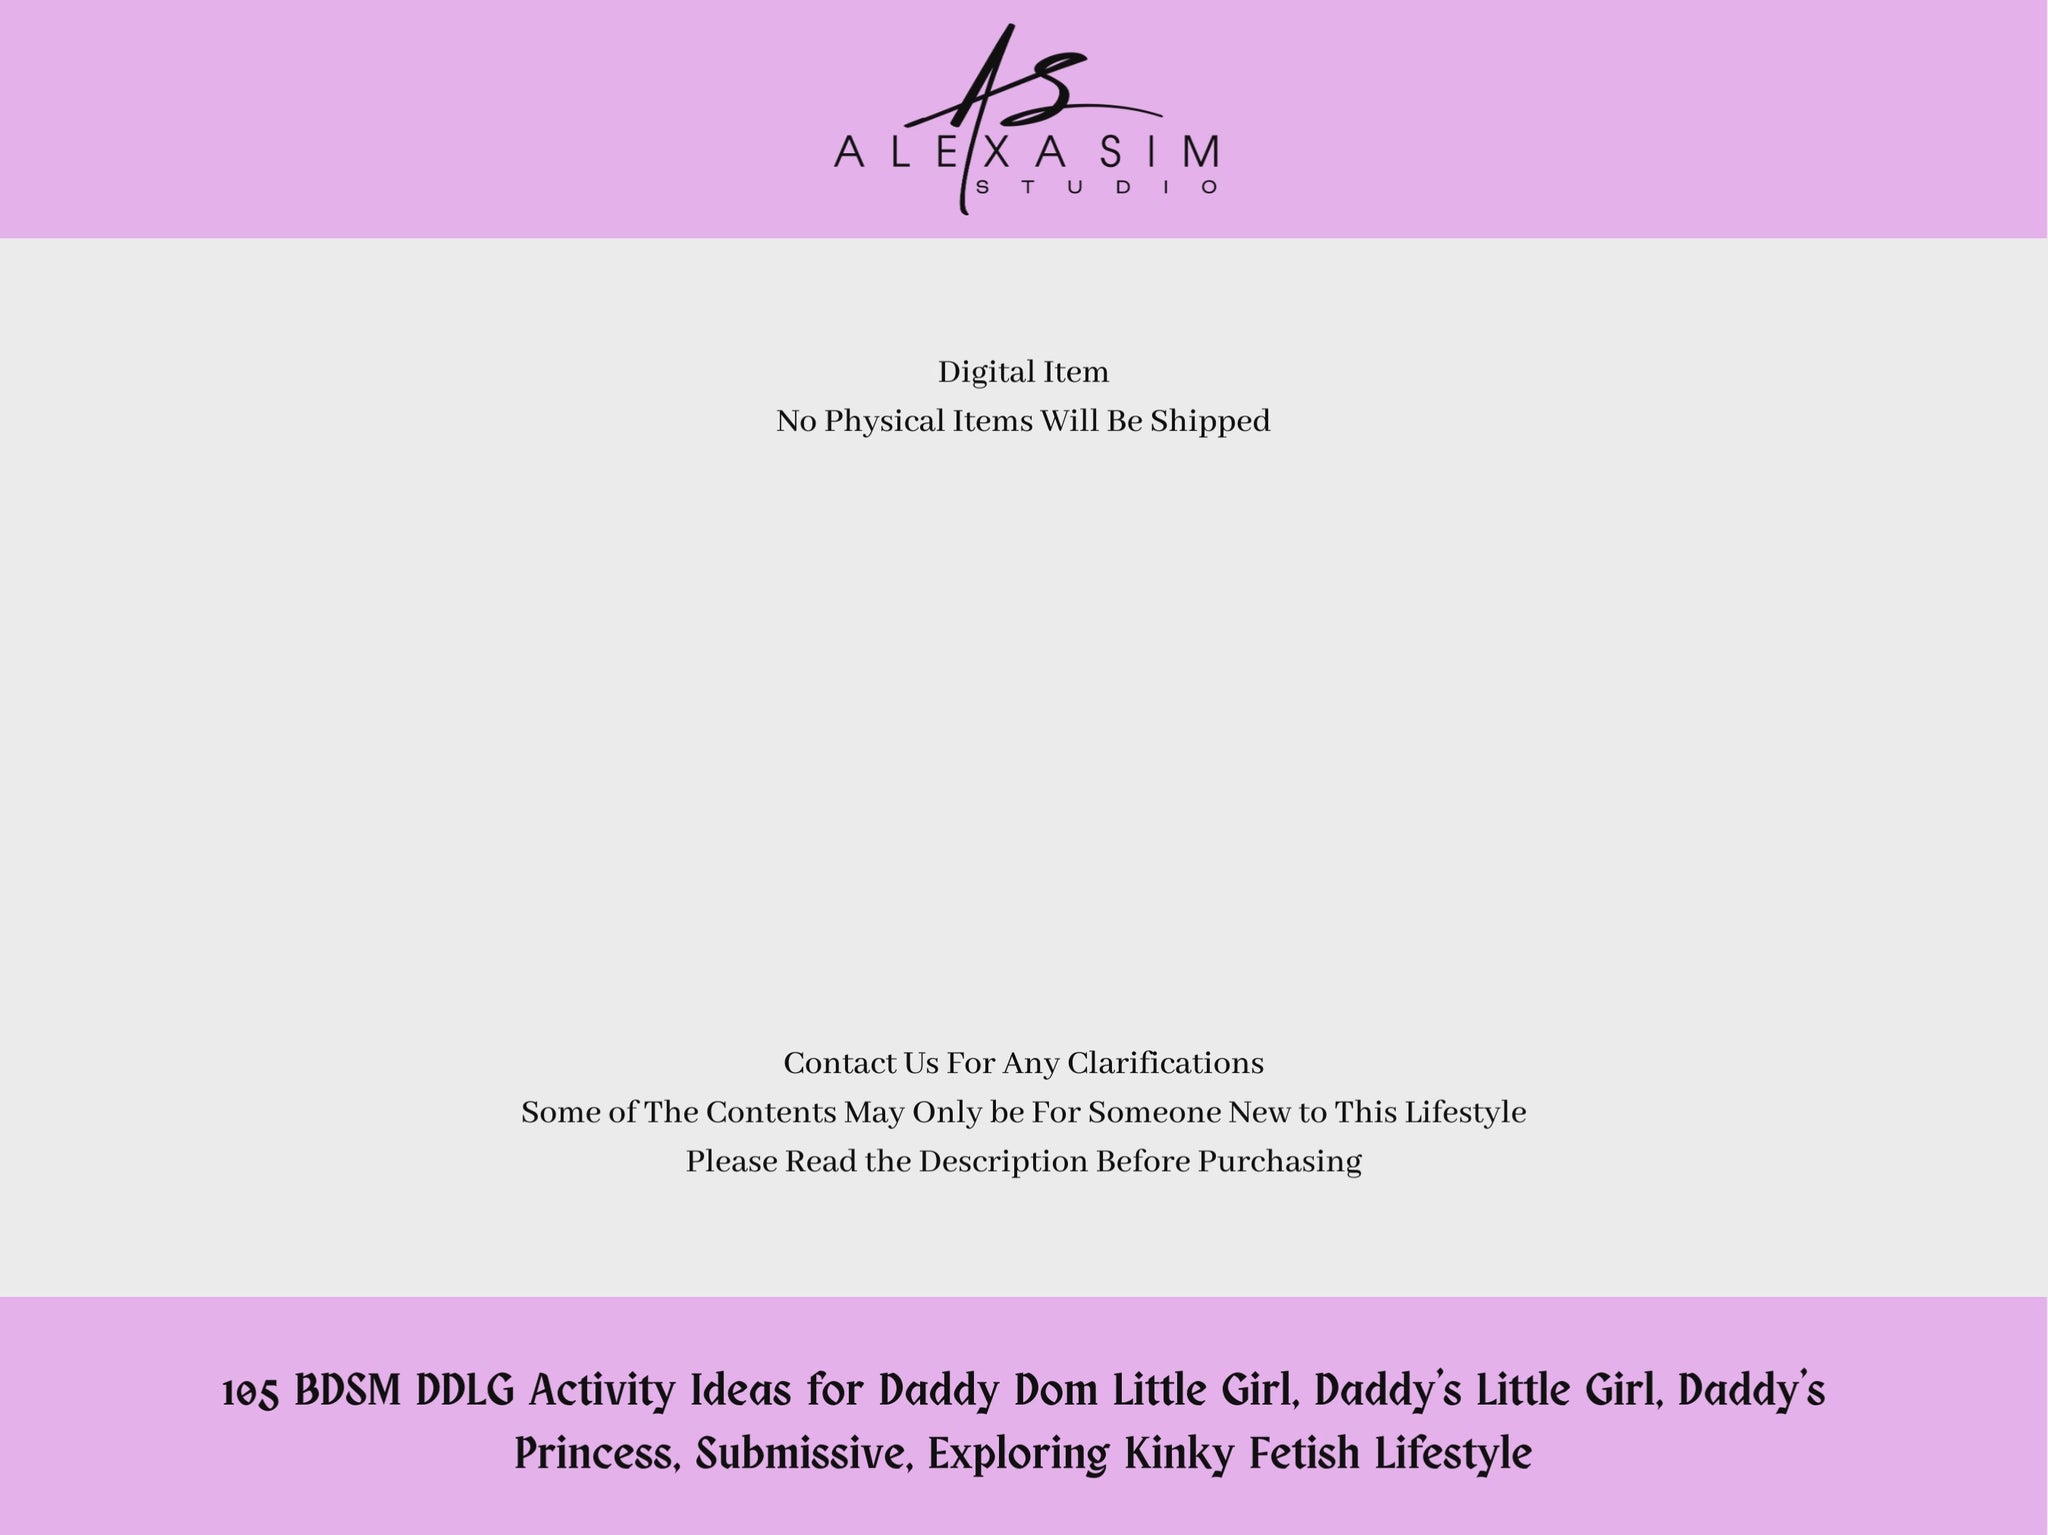 BDSM DDLG Activity Ideas